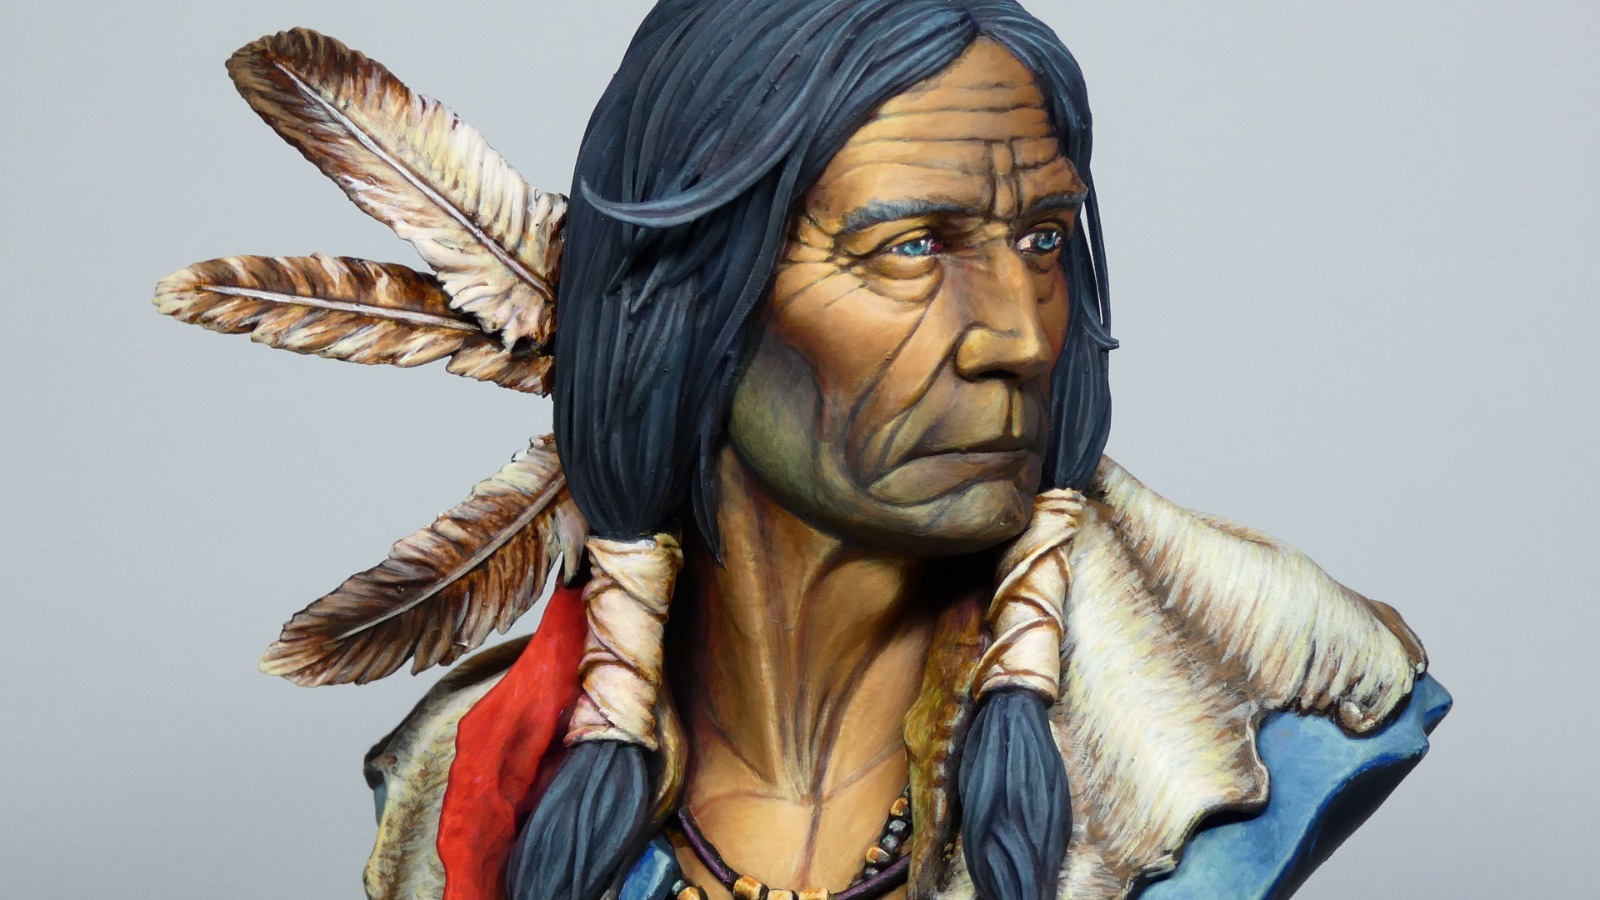 cara en primer plano del nativo americano